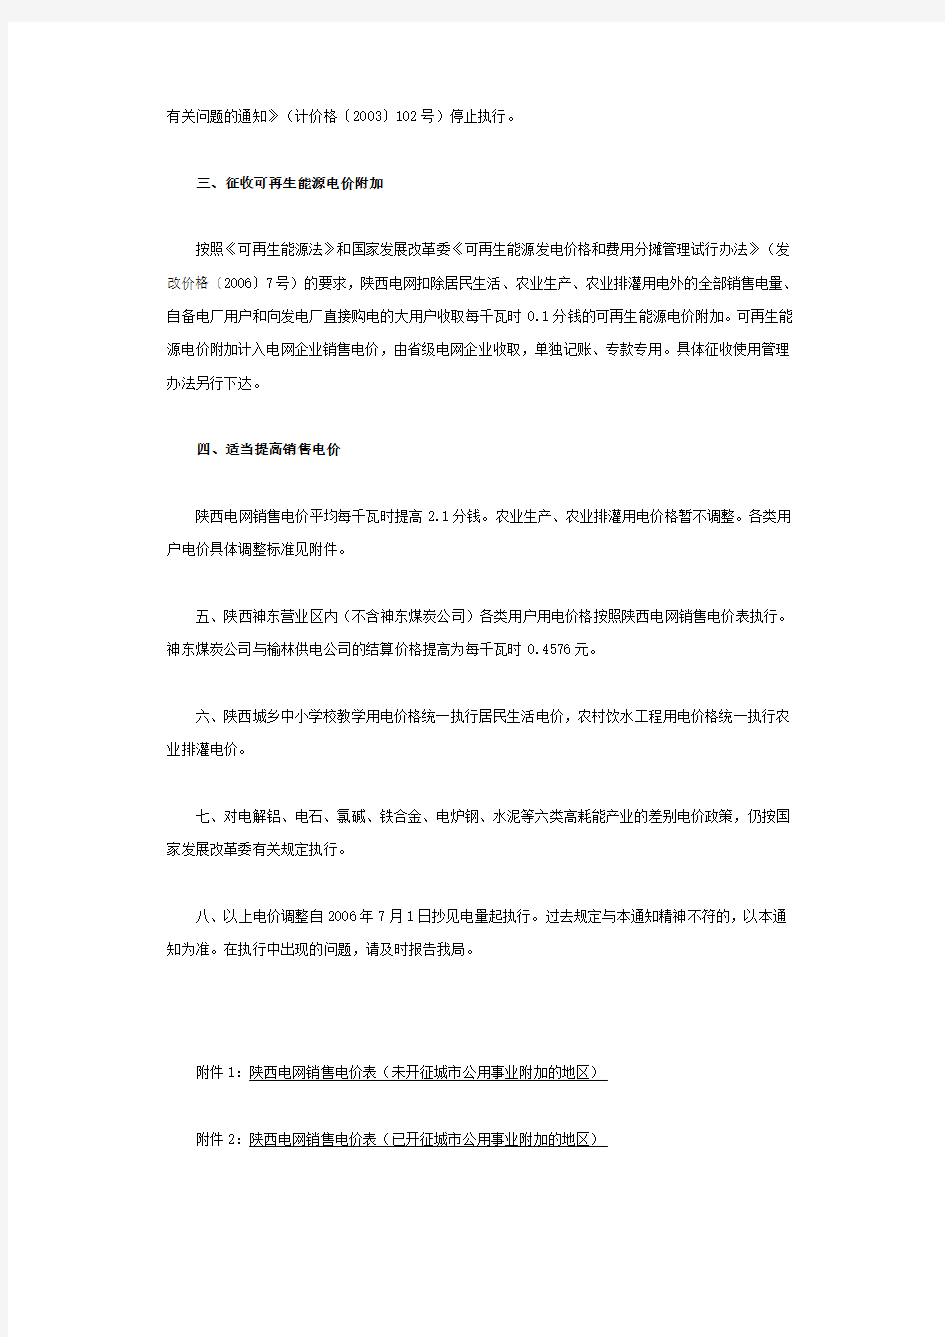 陕西省物价局关于调整陕西电网电力价格的通知